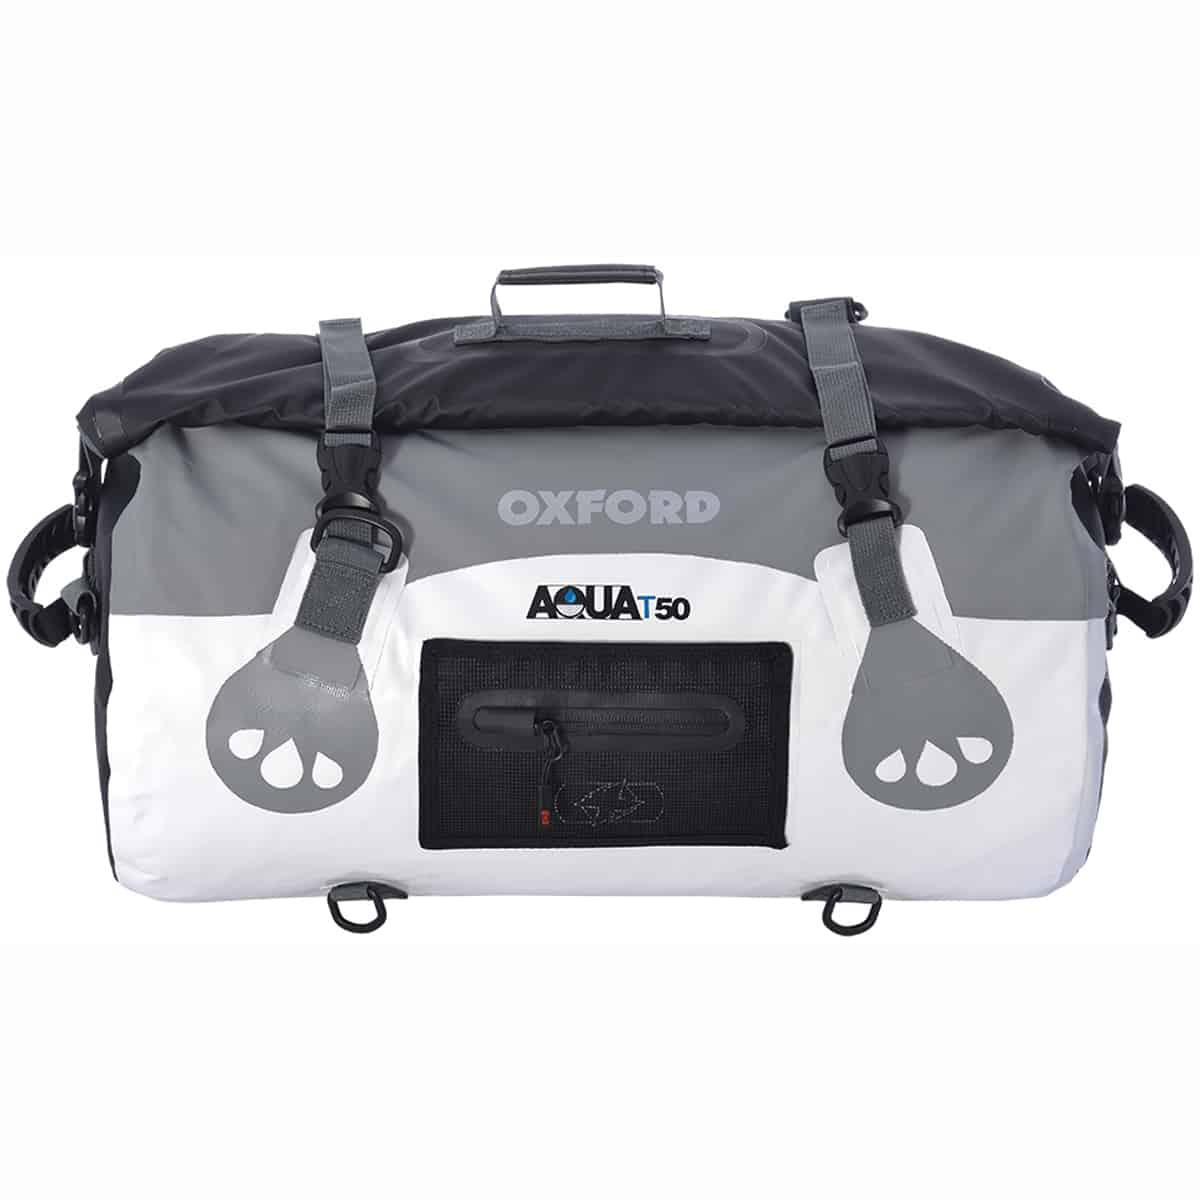 Oxford Aqua T50 Roll Bag 50 Litres WP